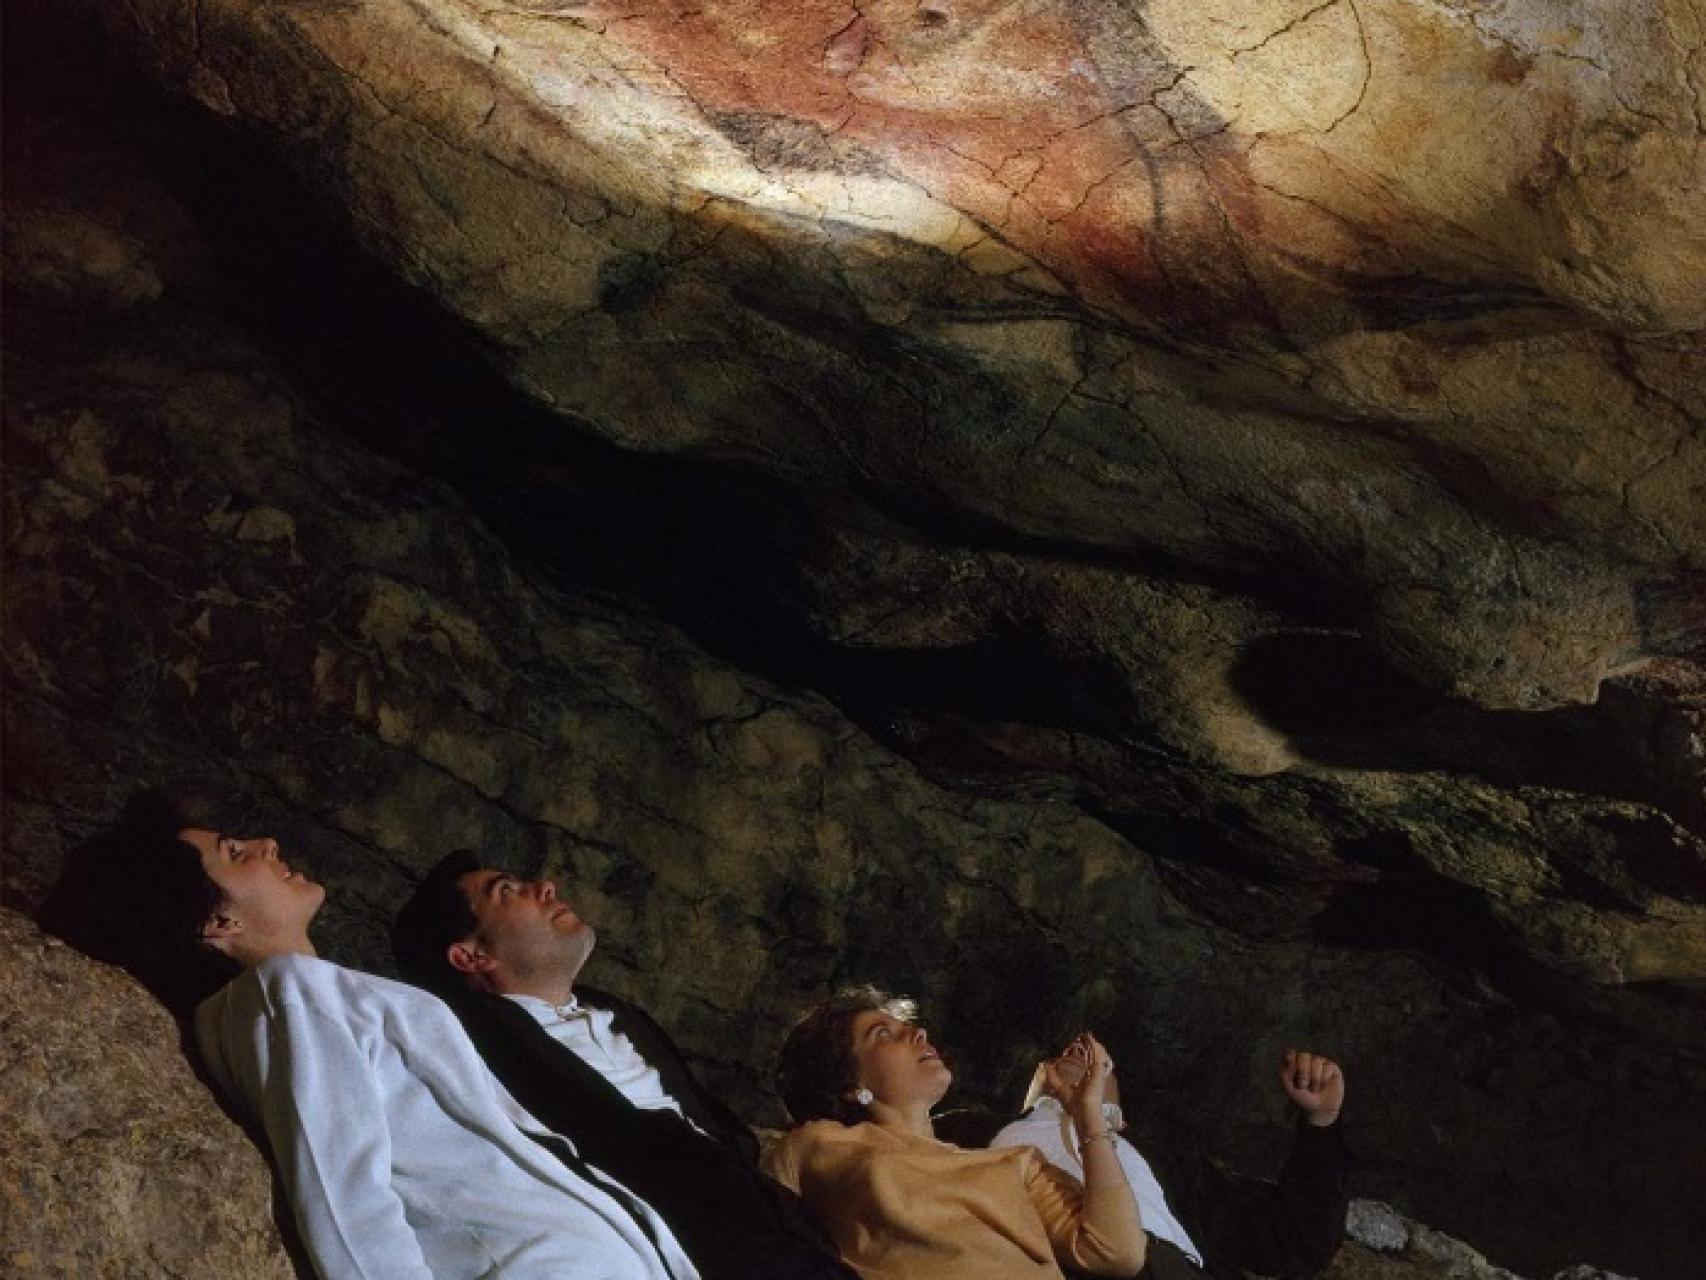 “La cueva de Altamira no es un producto de consumo”